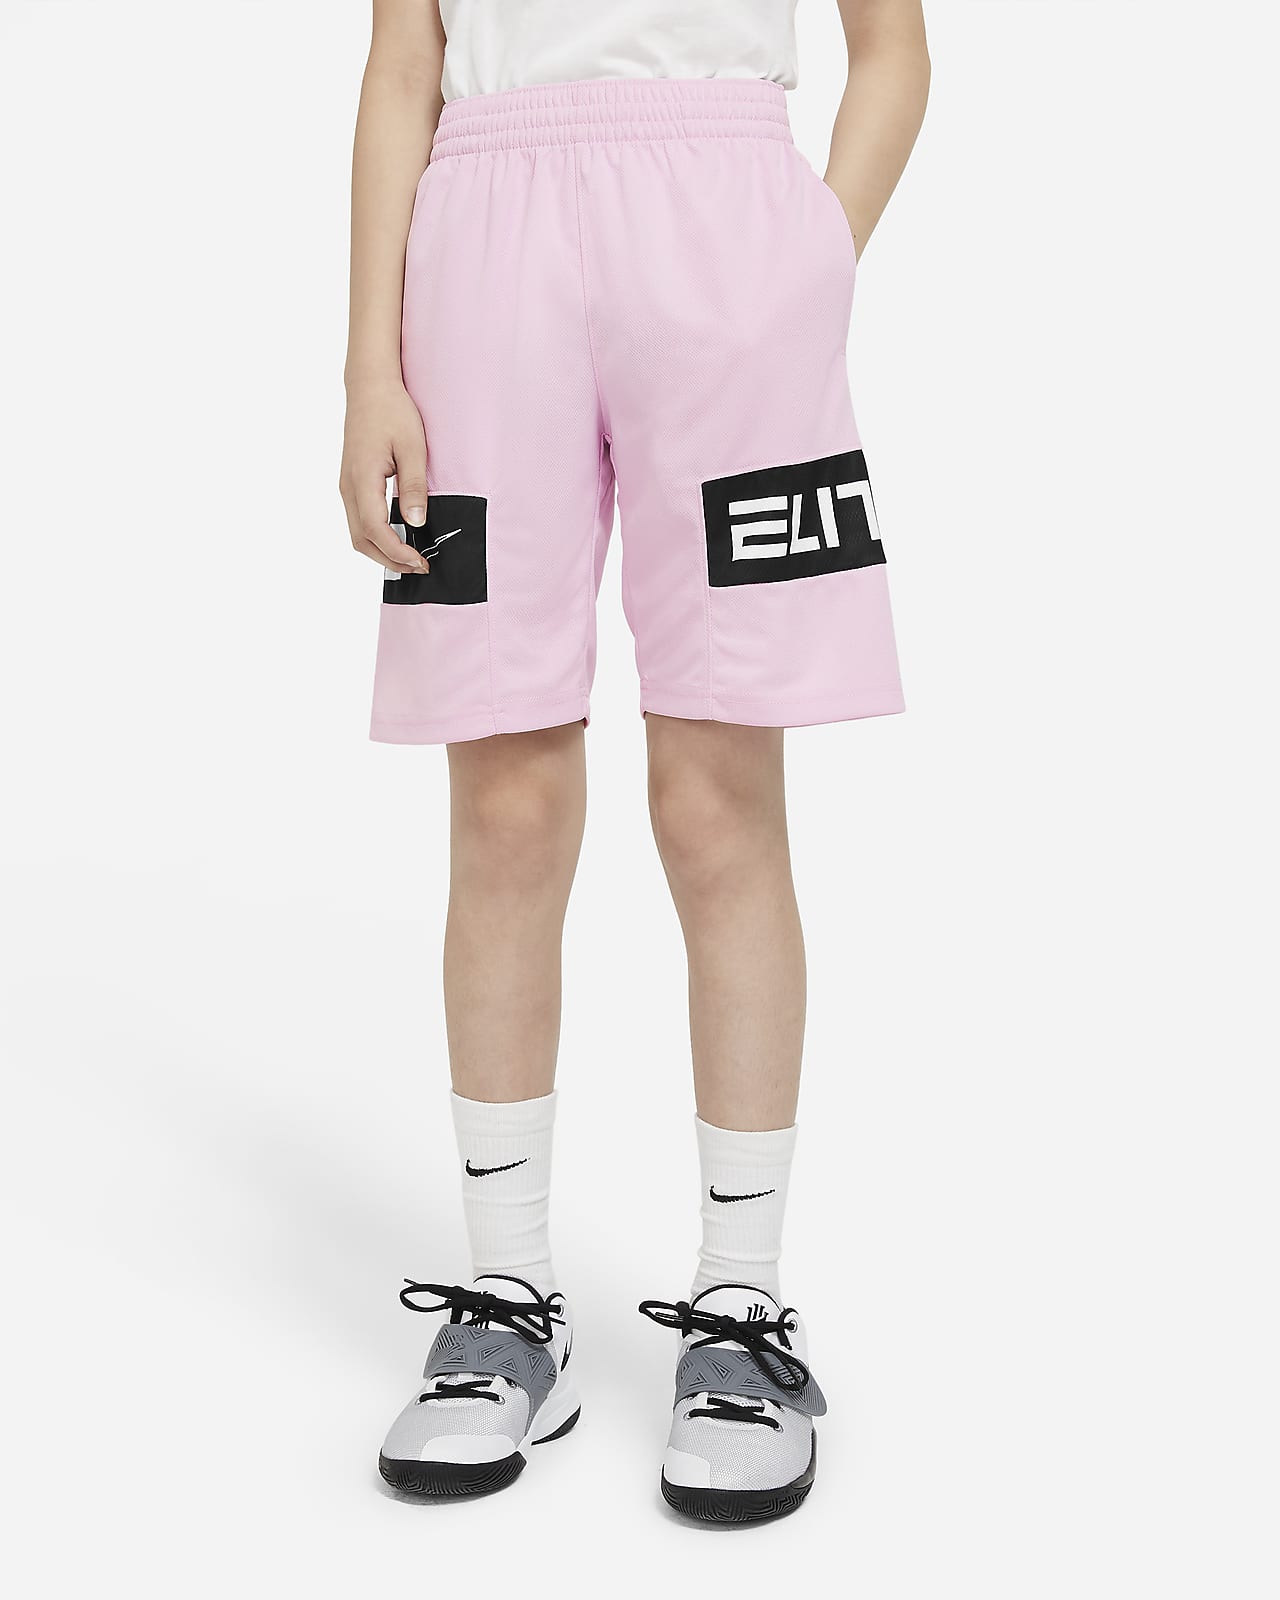 nike elite shorts youth xl